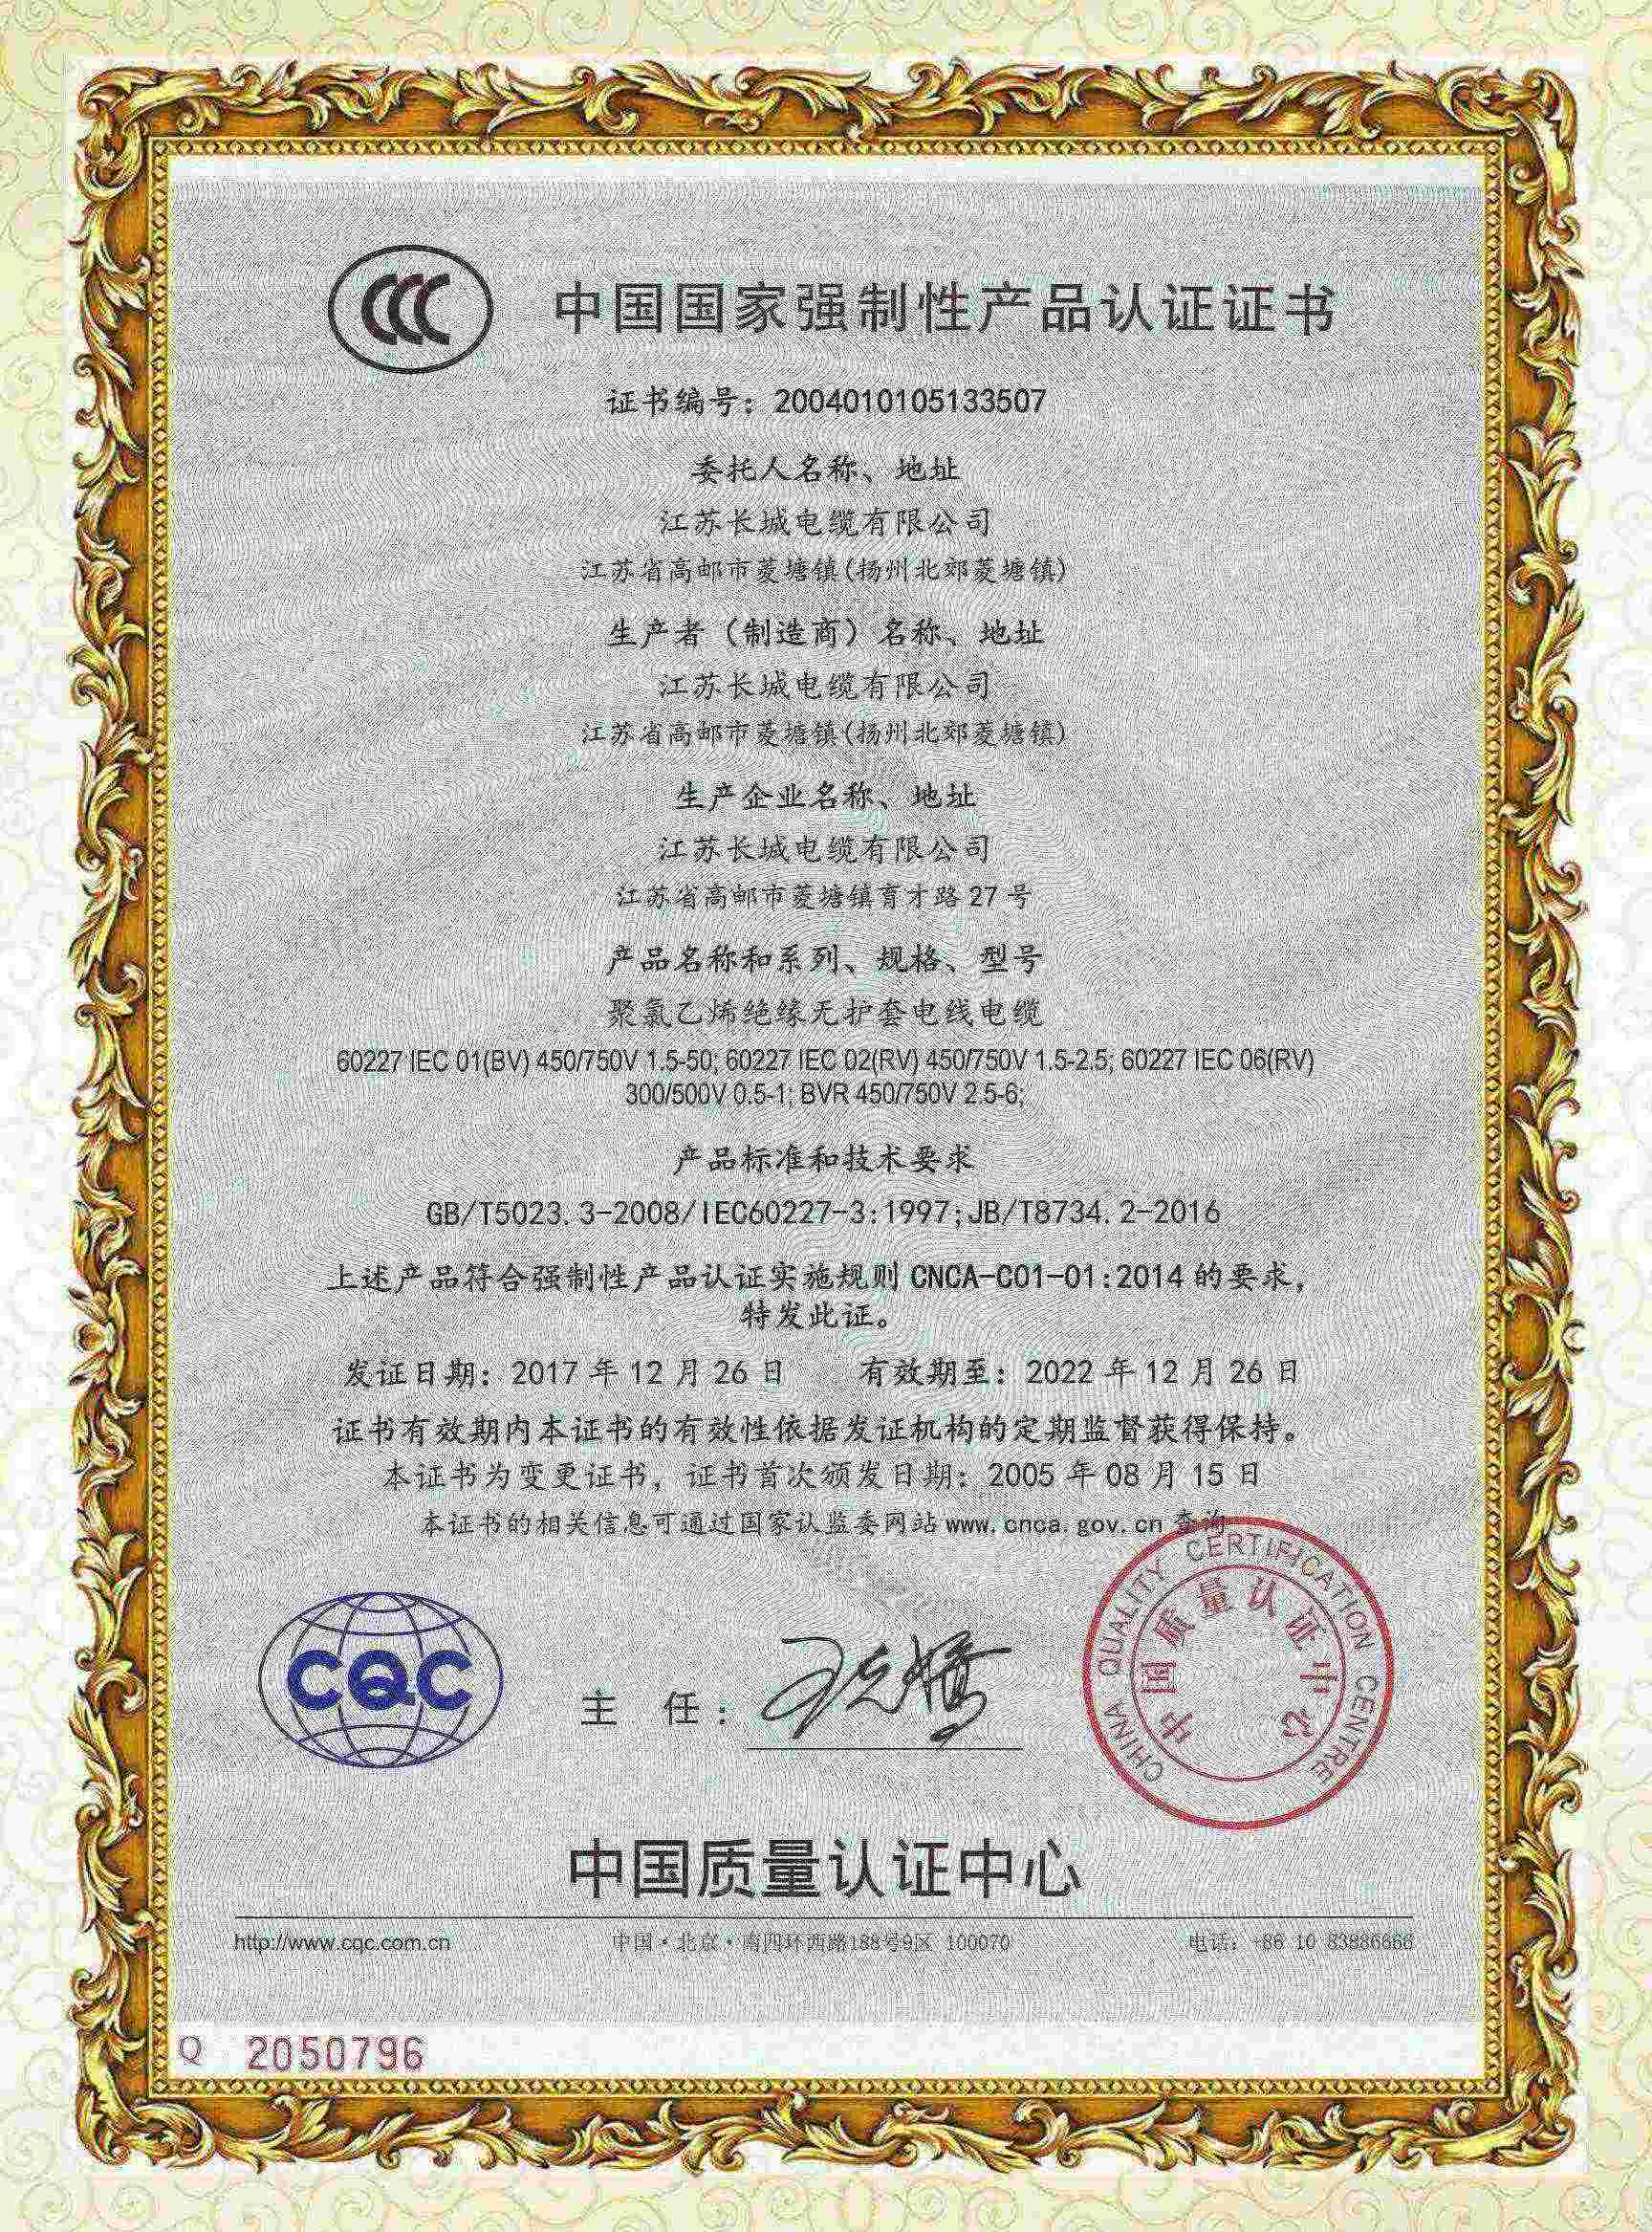 CCC產品認證證書